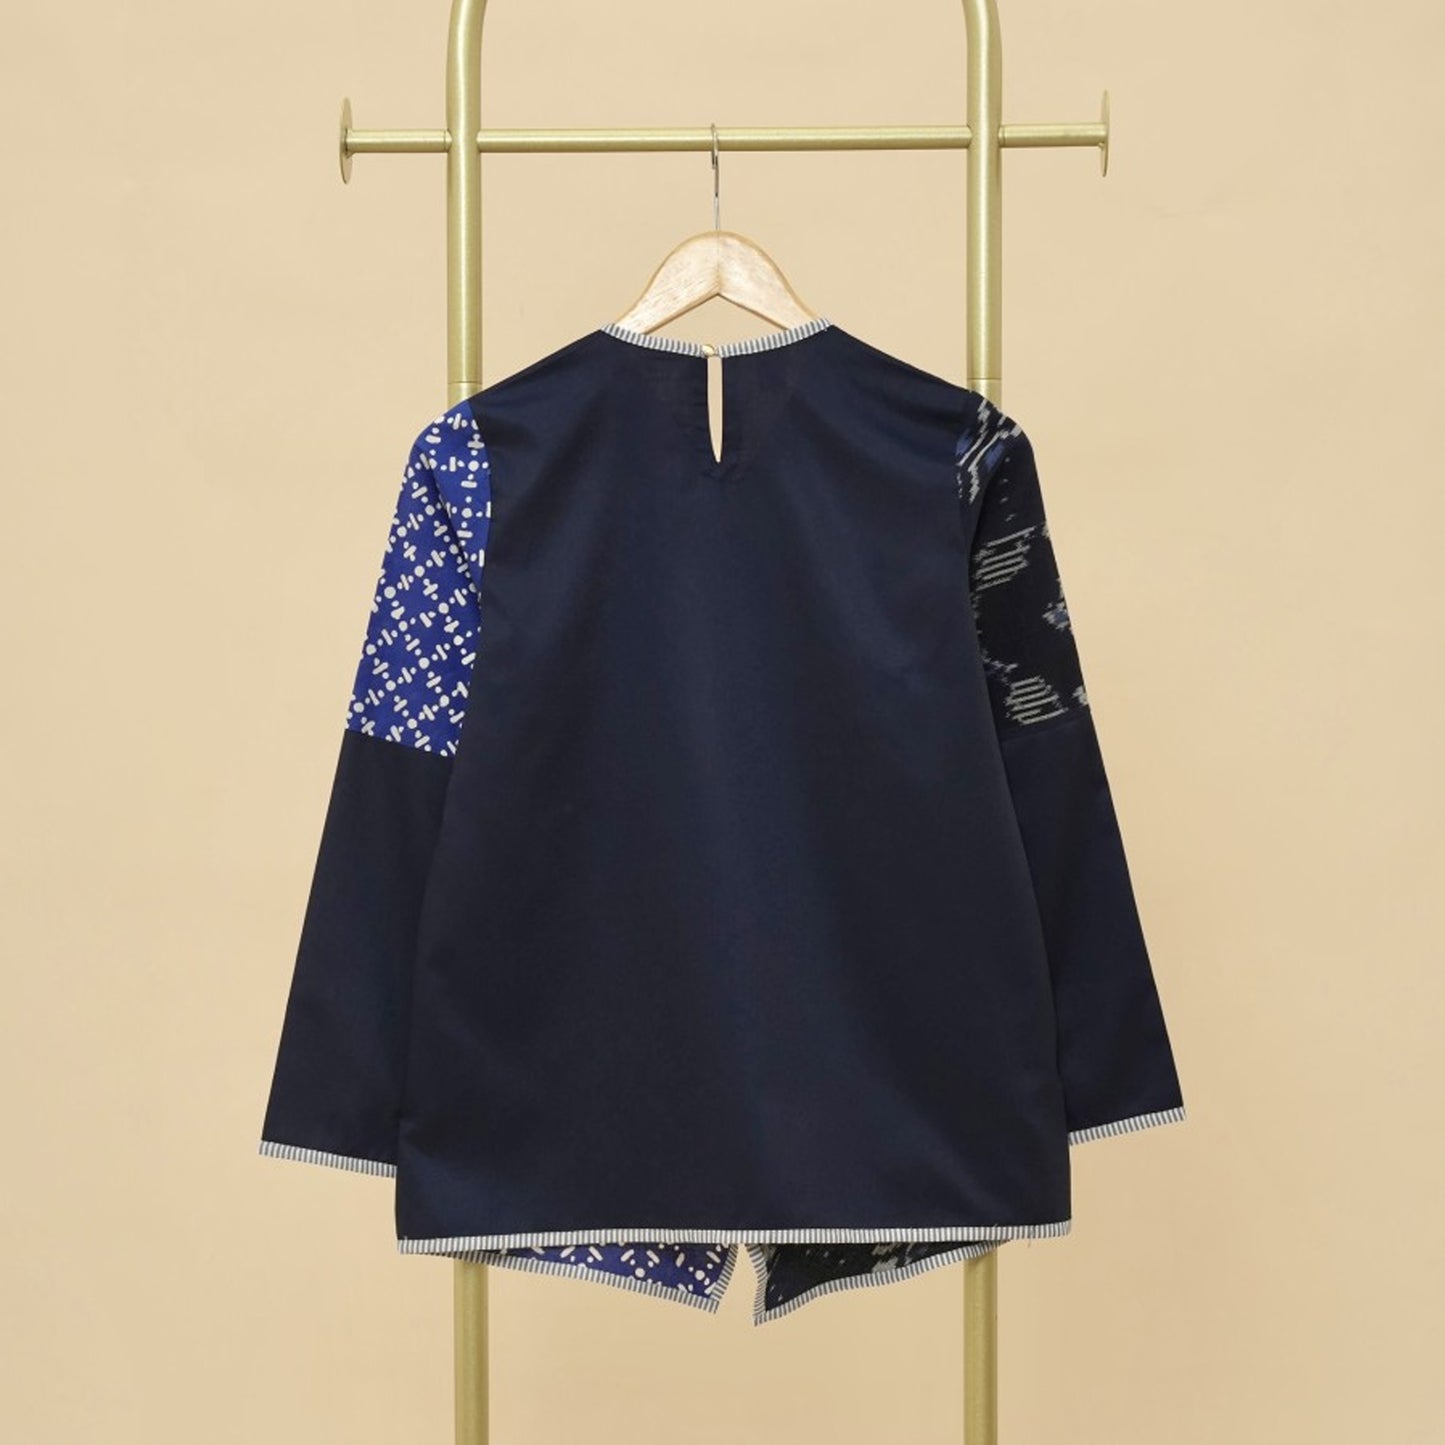 Navy Chic: ontketen de unieke stijl van batikmode, damesblouse, batikblouse, blouse voor dames, etnische jurk, formeel damesshirt